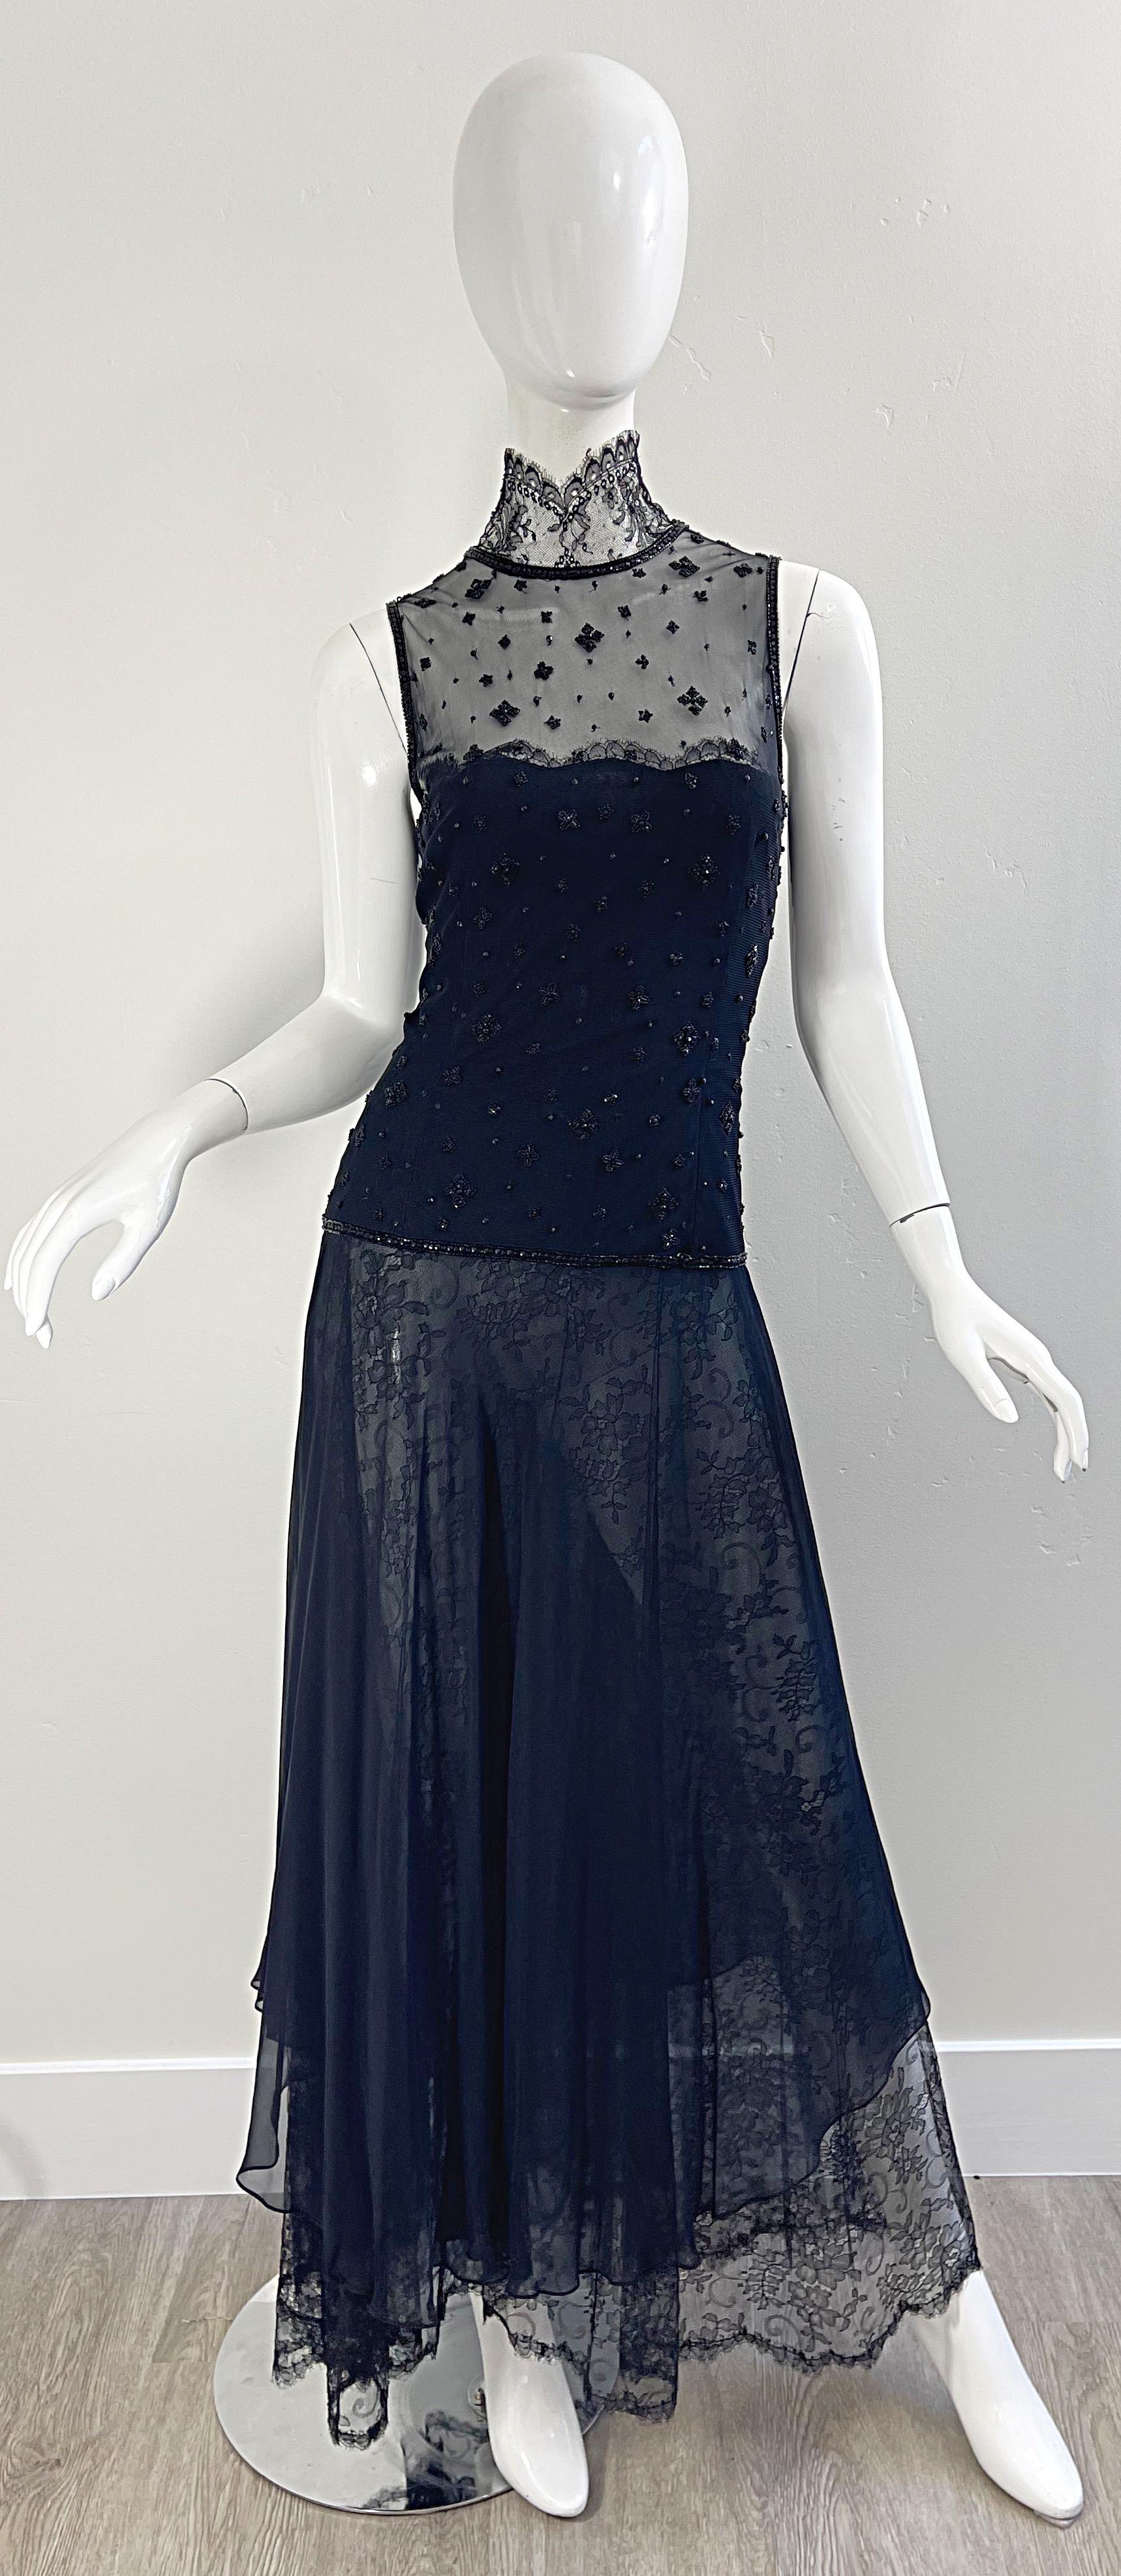 Exquisite 1990er vintage OSCAR DE LA RENTA für SAKS 5th AVE Couture schwarzer Seidenchiffon und chattily Spitze halb durchsichtig Abendkleid ! Dieses wunderschöne Kleid hat so viel Liebe zum Detail. Mehrere Lagen Chiffon auf dem Mieder mit hunderten